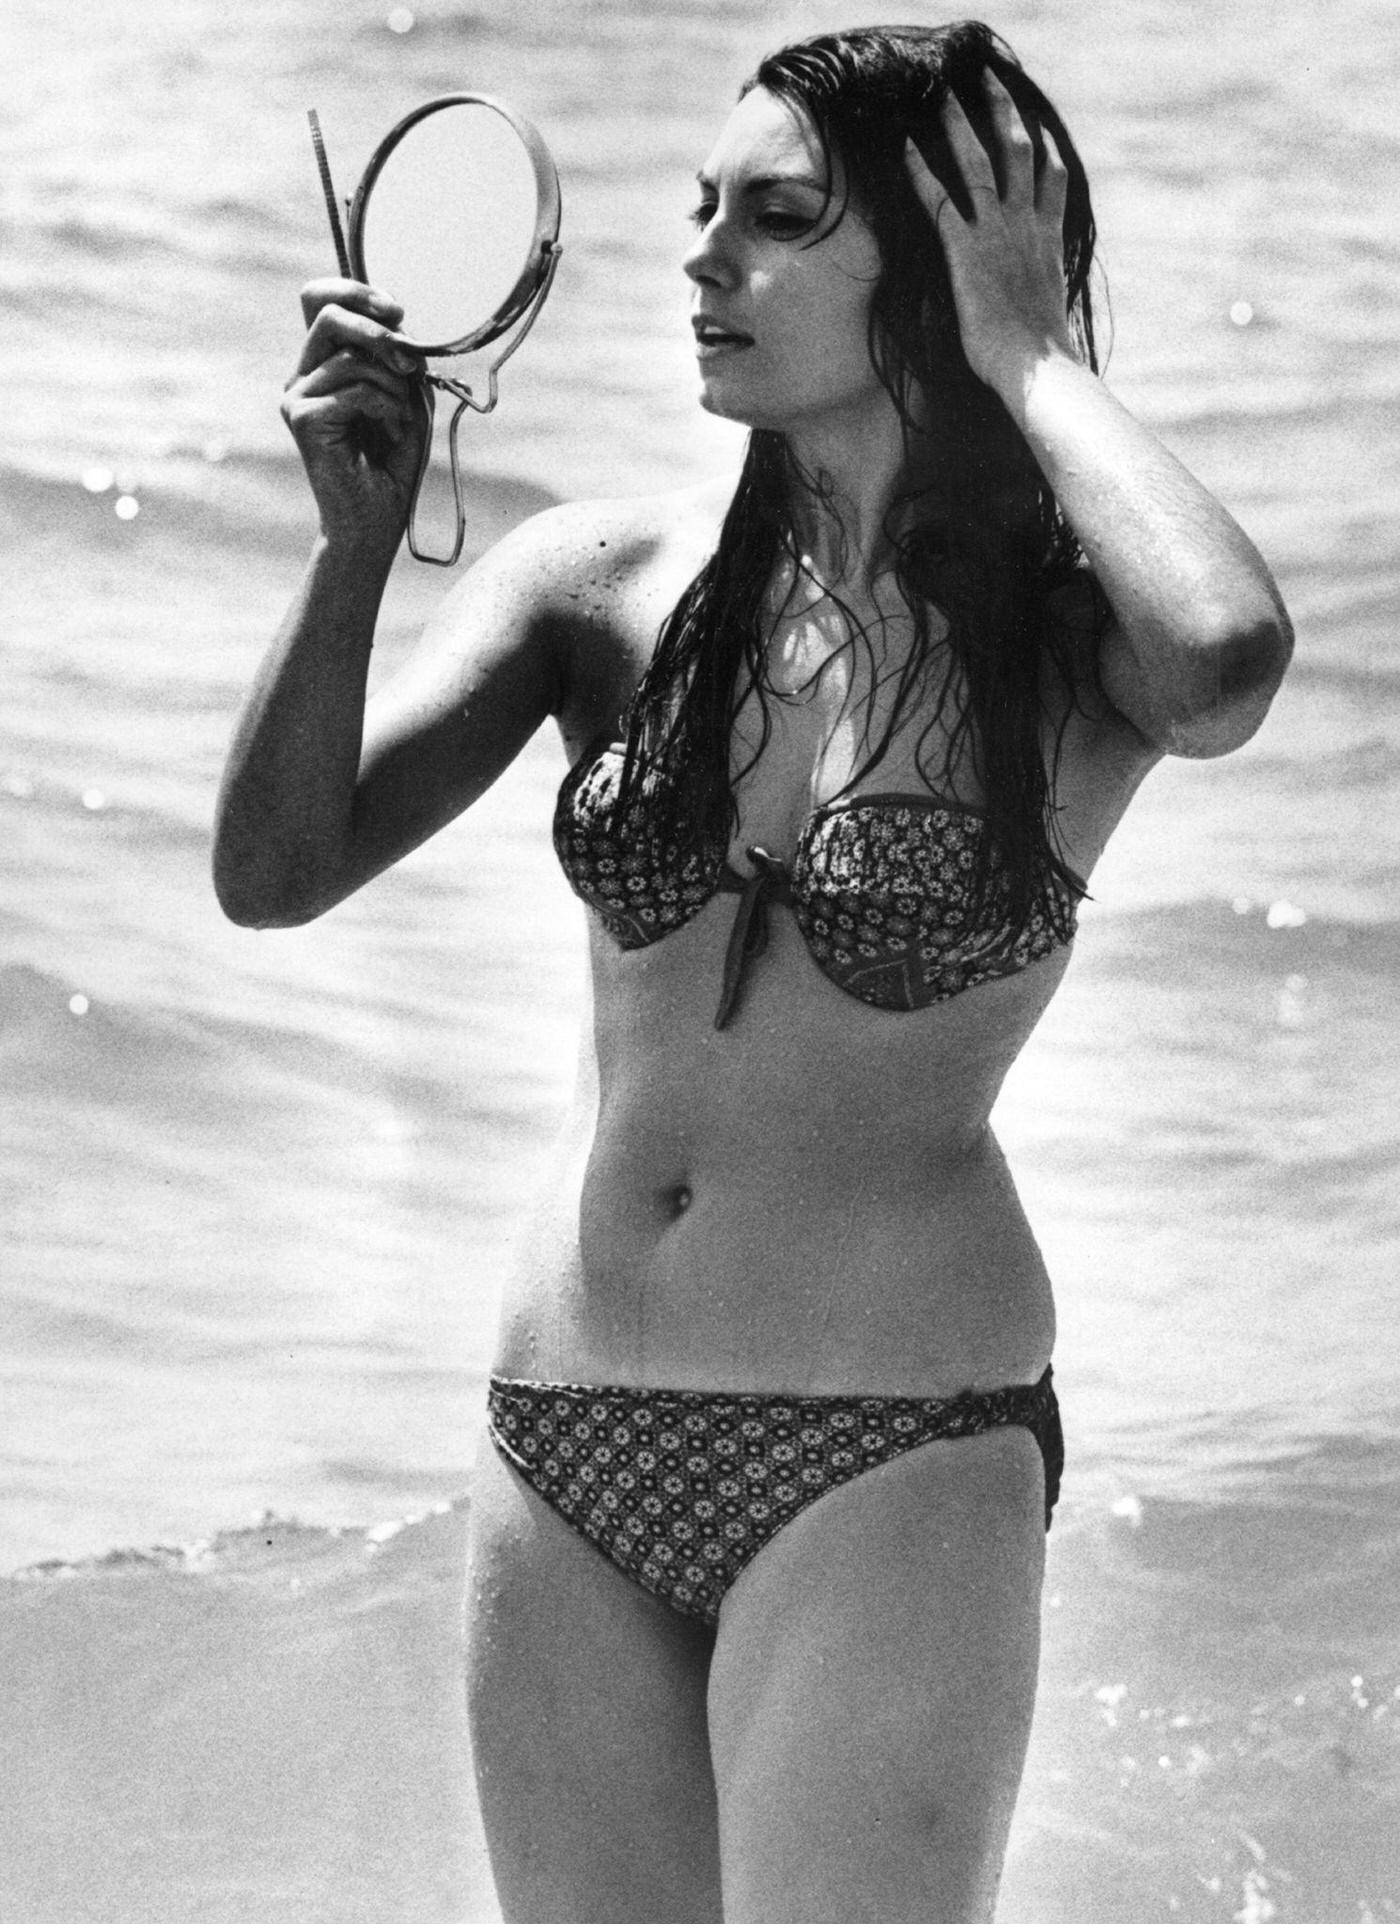 Roseanna Schiaffino in a bikini at the beach, Ostia, 1955